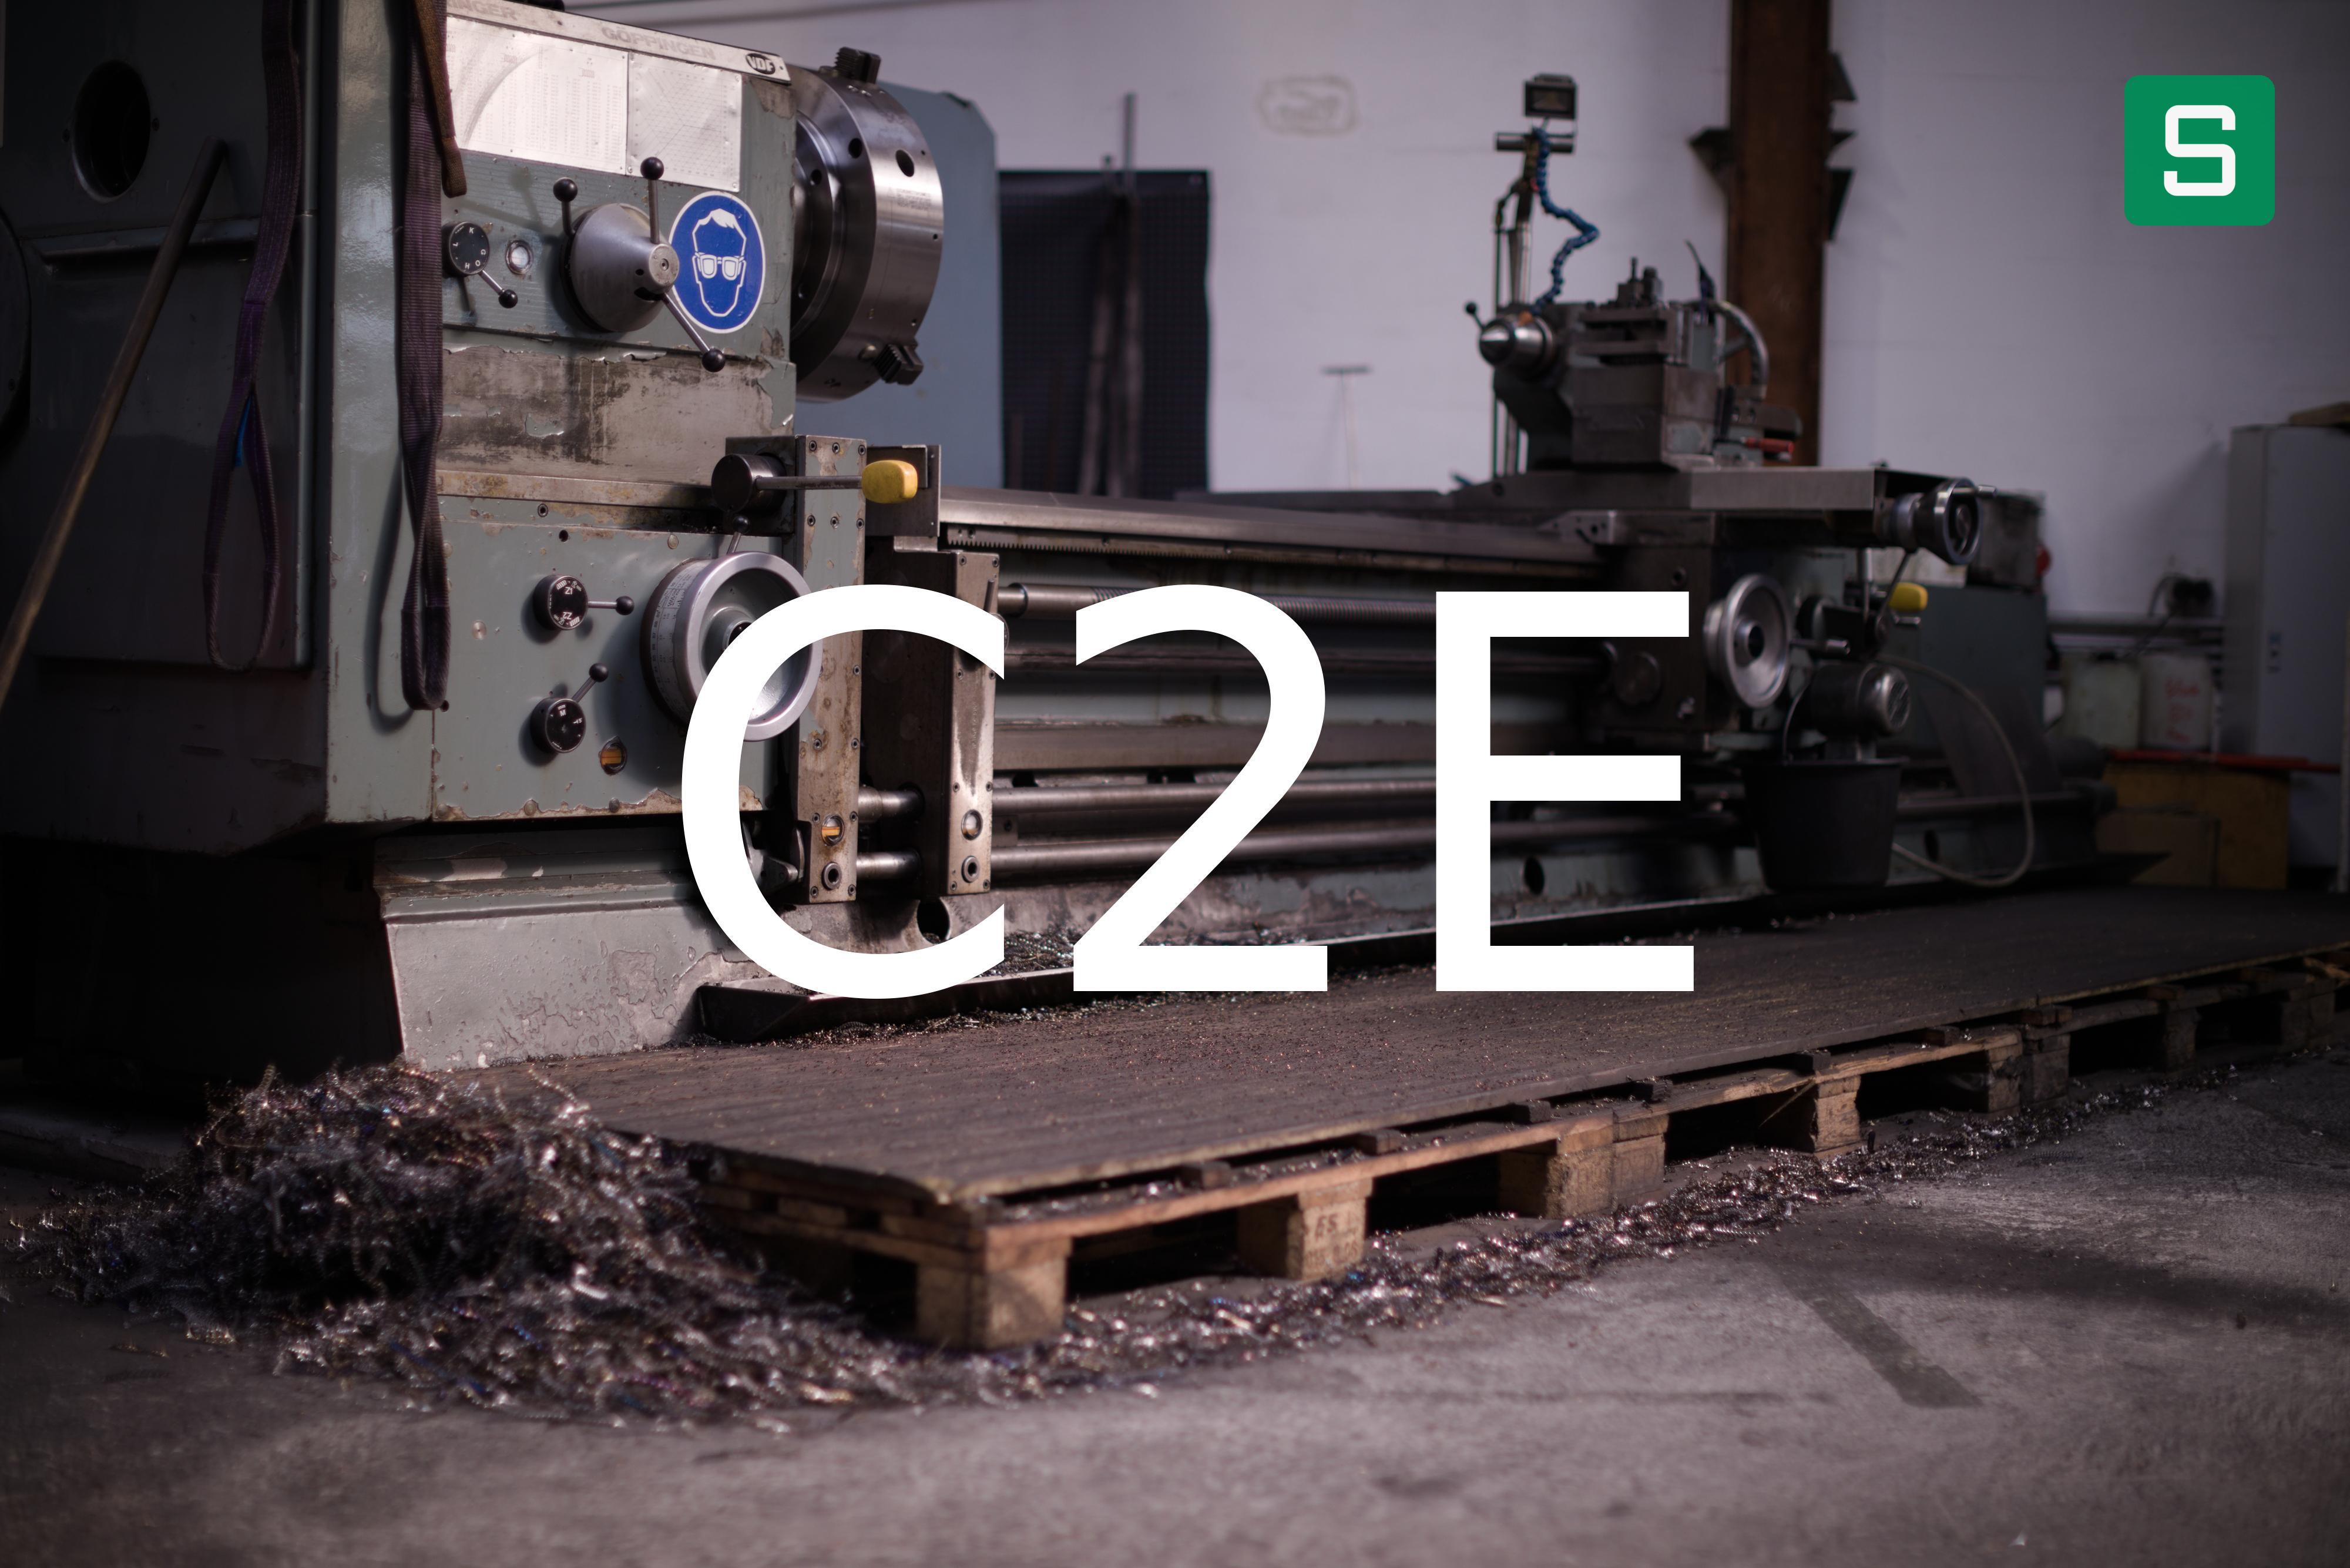 Steel Material: C2E